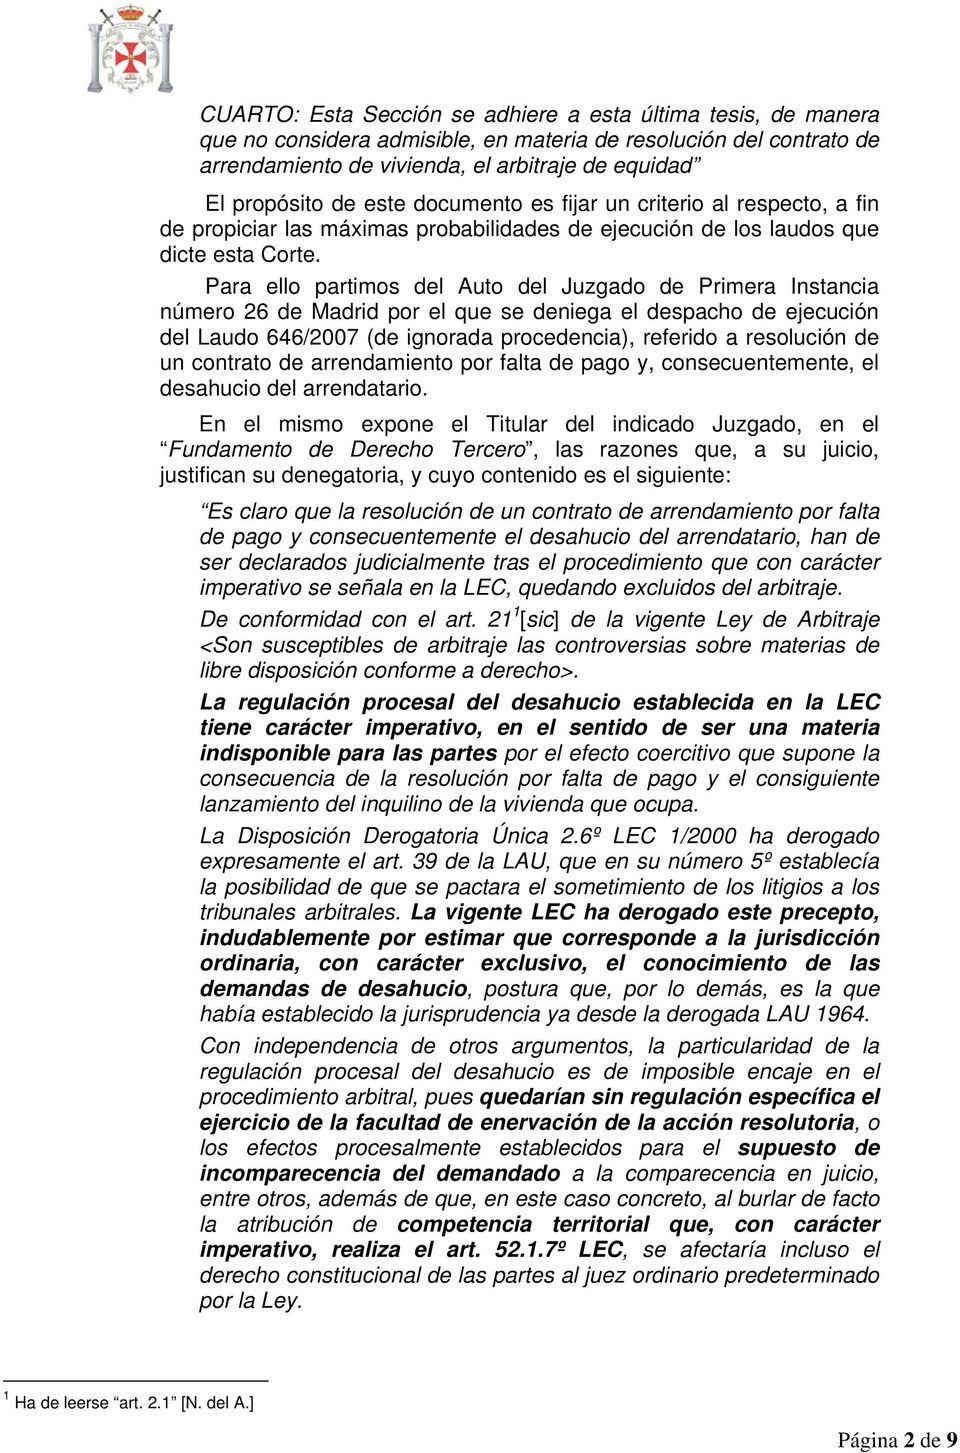 Para ello partimos del Auto del Juzgado de Primera Instancia número 26 de Madrid por el que se deniega el despacho de ejecución del Laudo 646/2007 (de ignorada procedencia), referido a resolución de